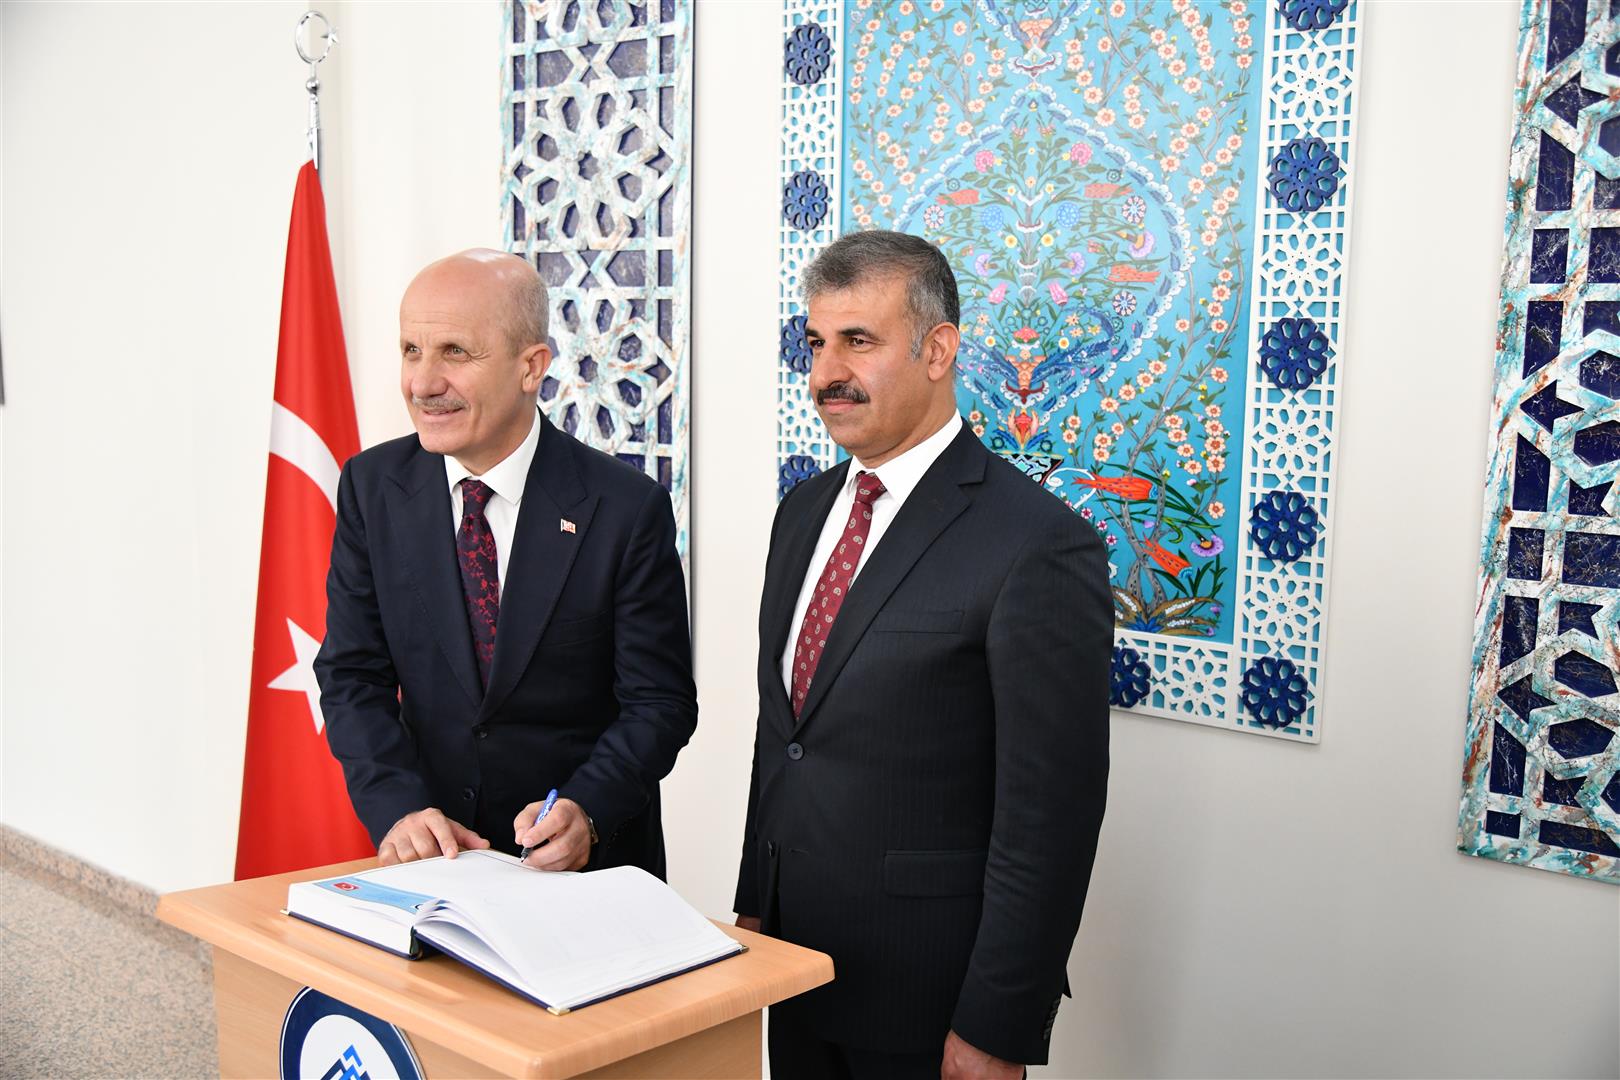 Üniversite Camii’nin resmi açılışı Diyanet İşleri Başkanı Erbaş tarafından gerçekleştirildi